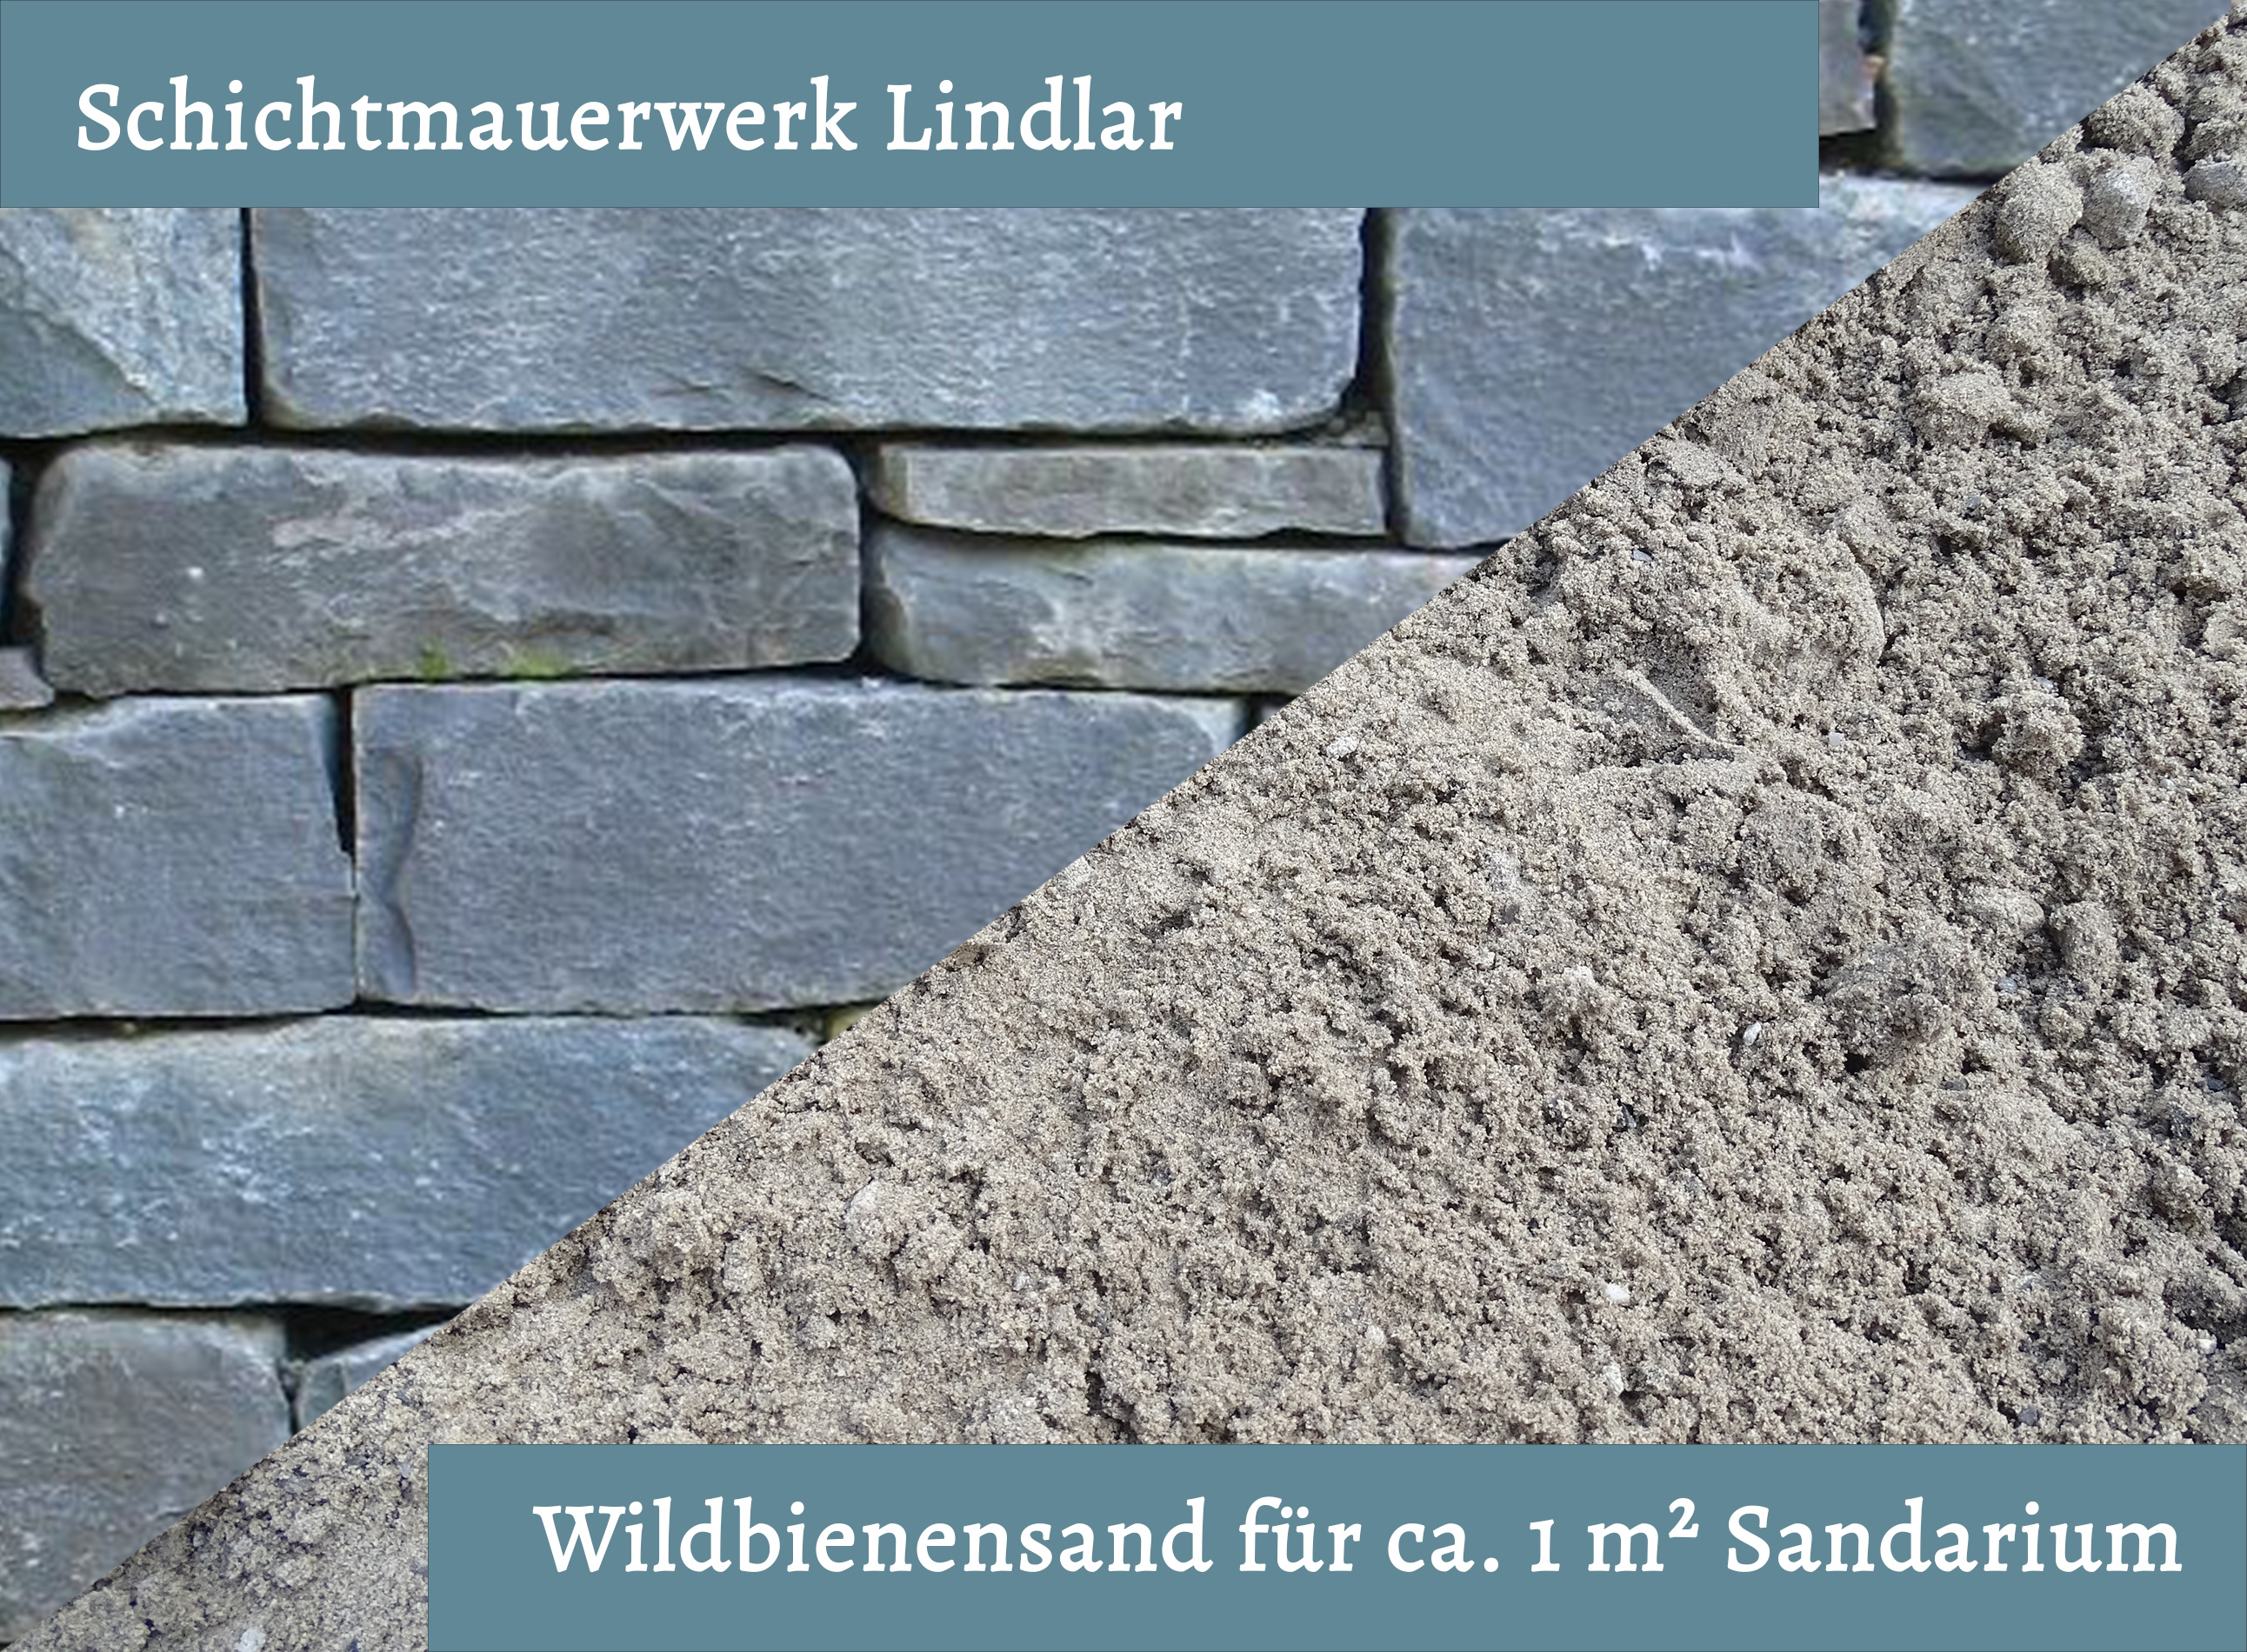 Wildbienensand mit Schichtmauer Lindlar für Sandarium 1,0 m²